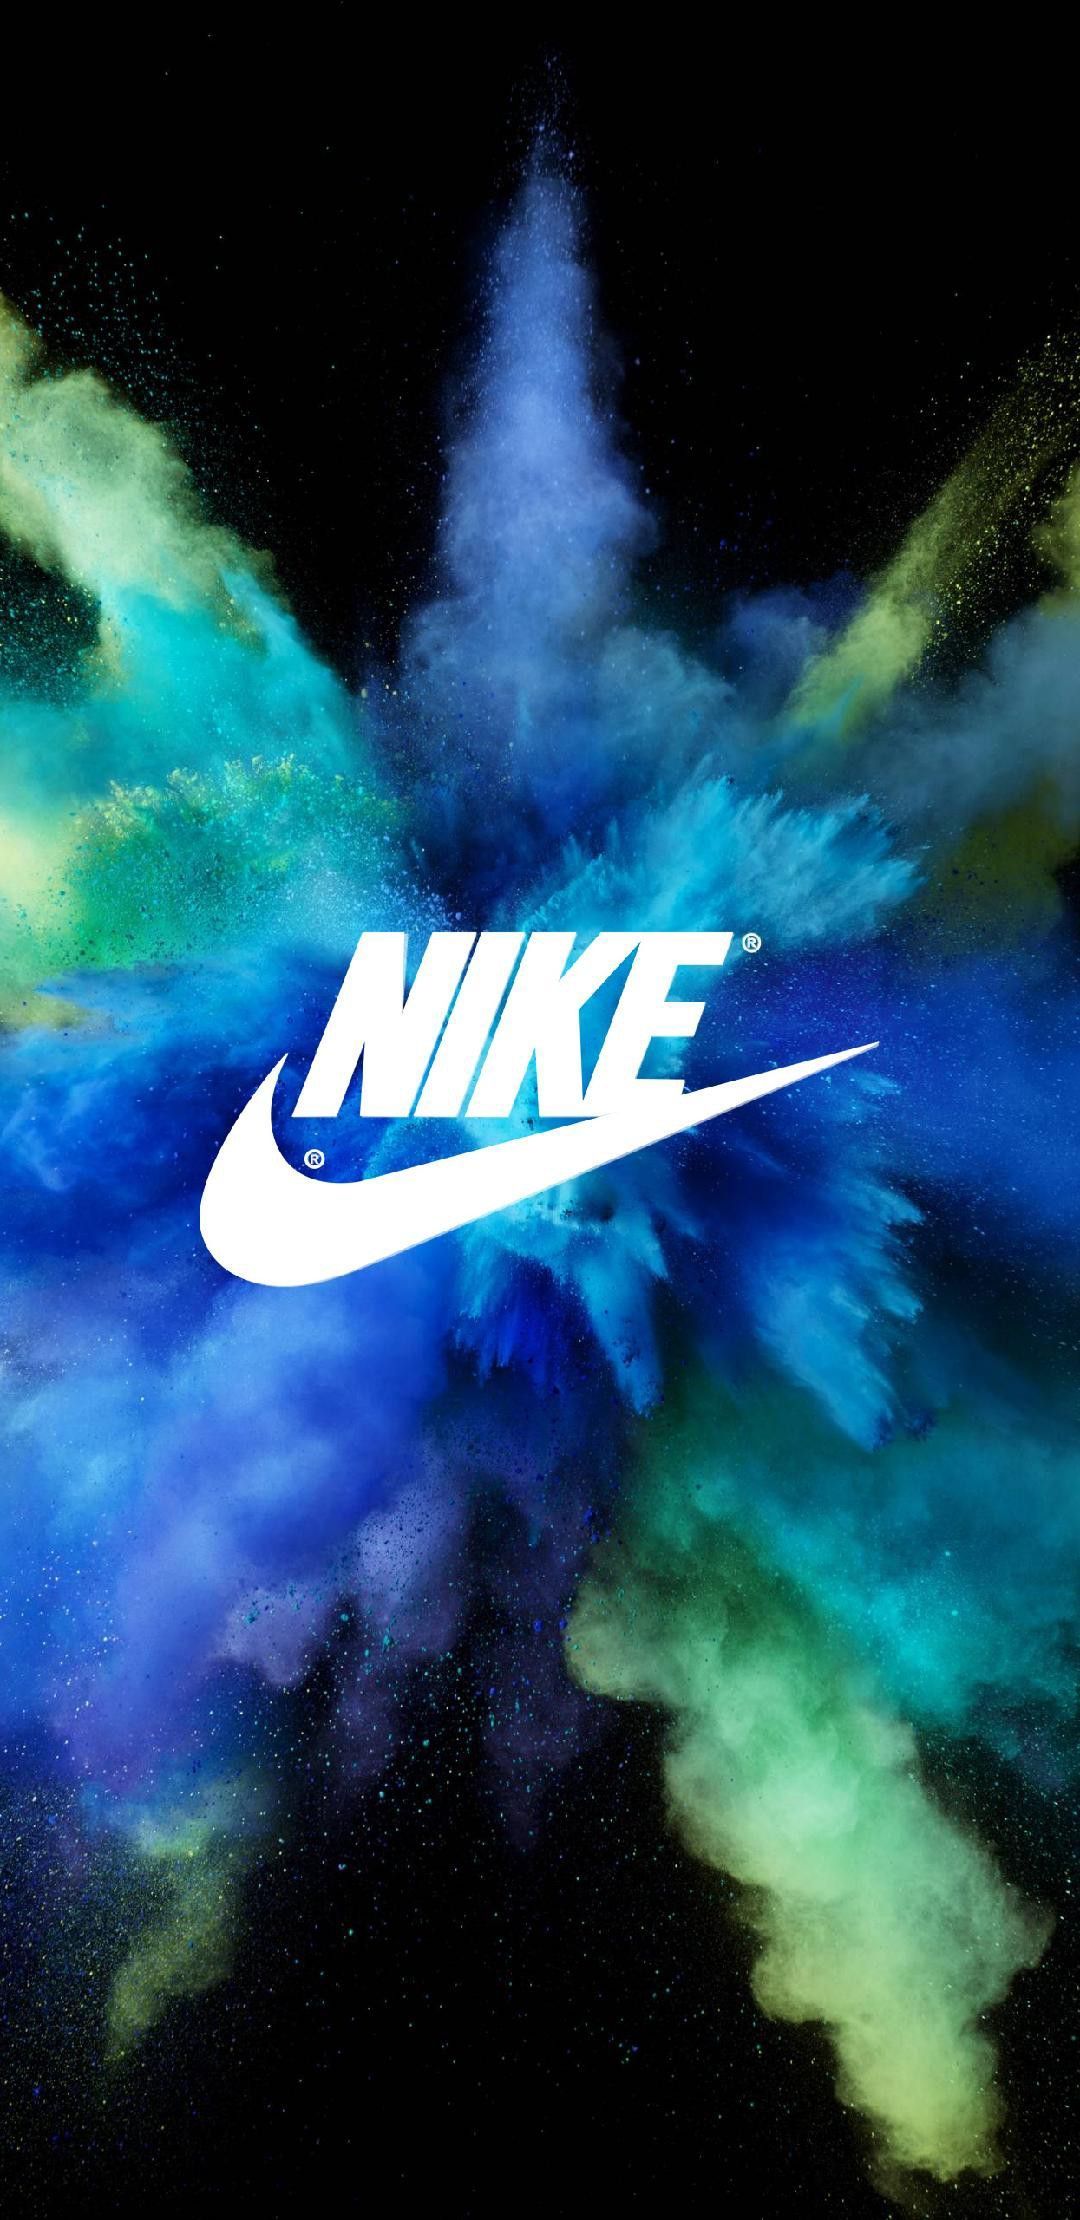 Cool Nike Logo Wallpaper. Wallpaper Nice. Nike wallpaper, Cool nike wallpaper, Nike logo wallpaper